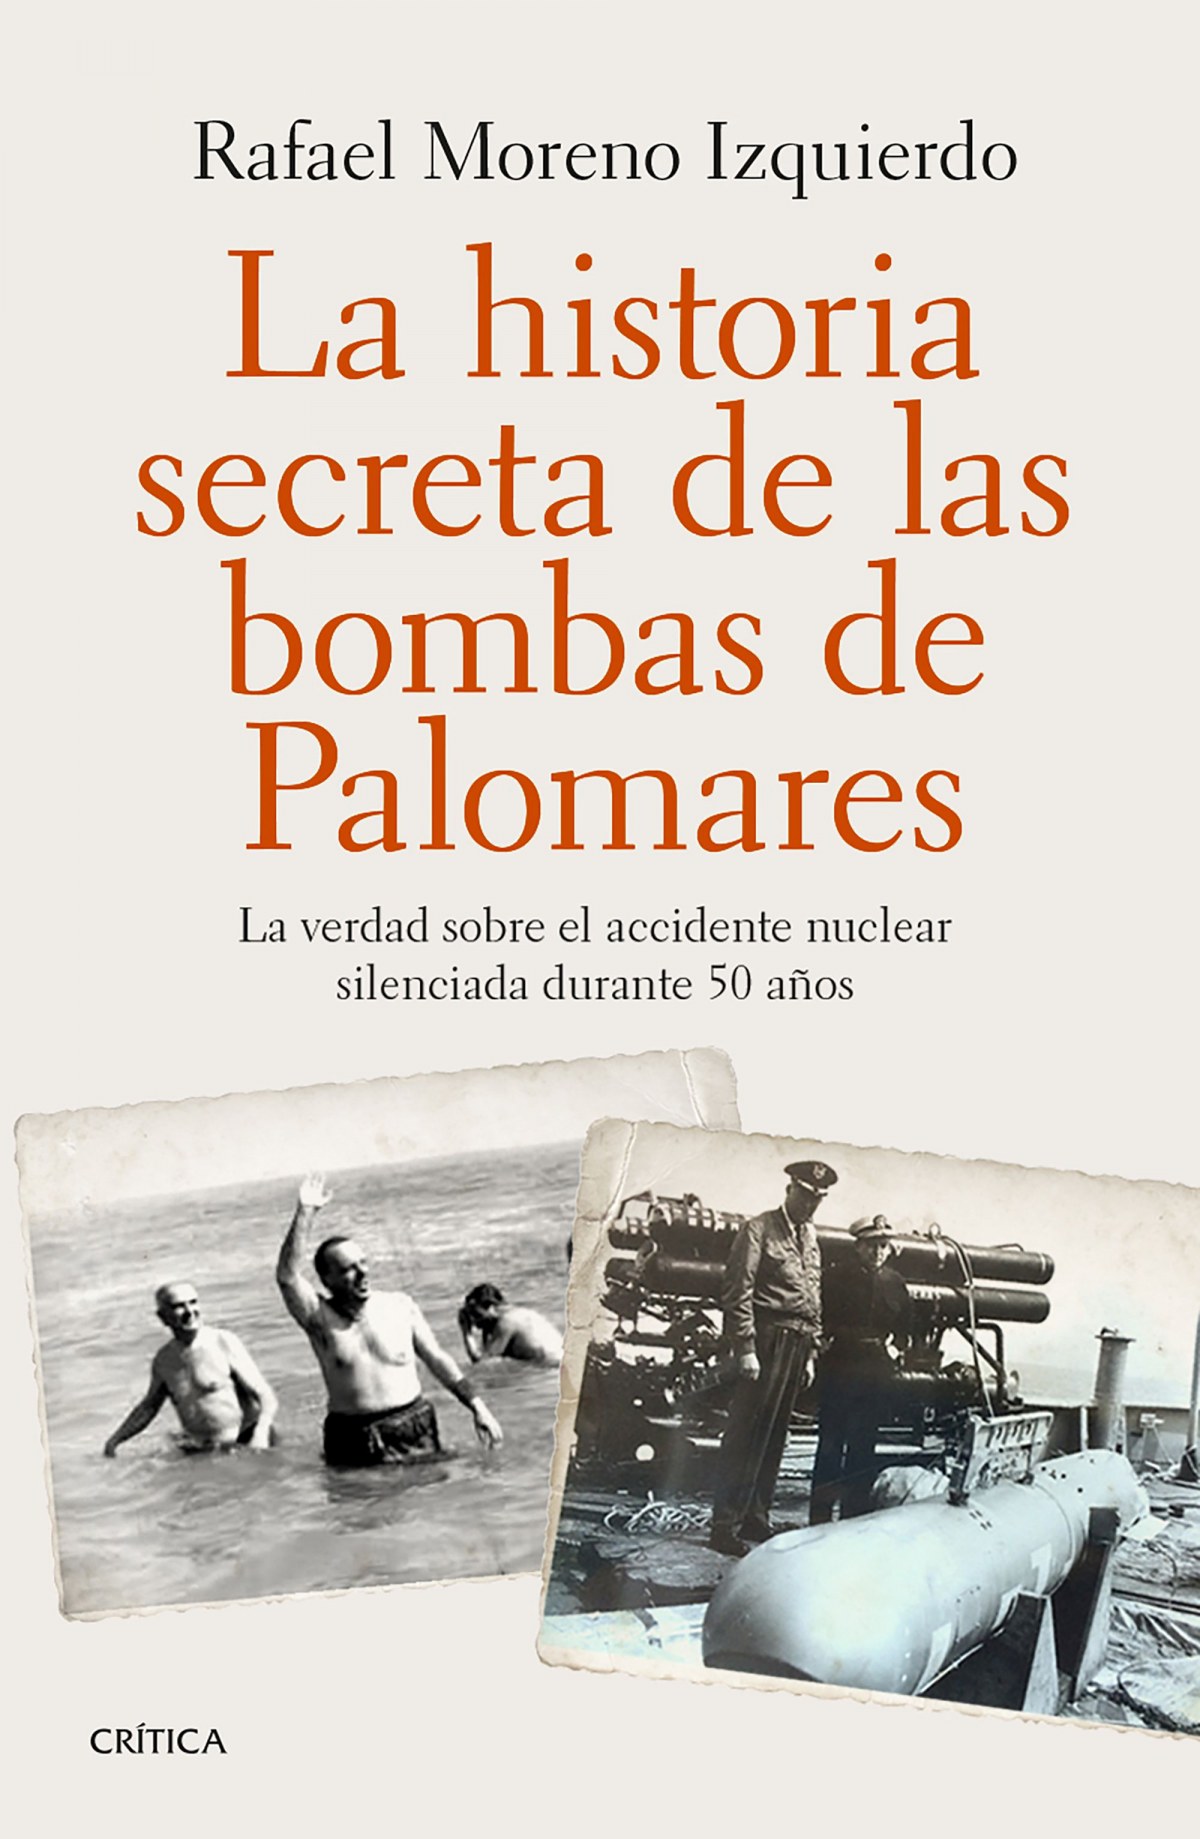 La histproa secreta de las bombas de palomares - Moreno Izquierdo, Rafael